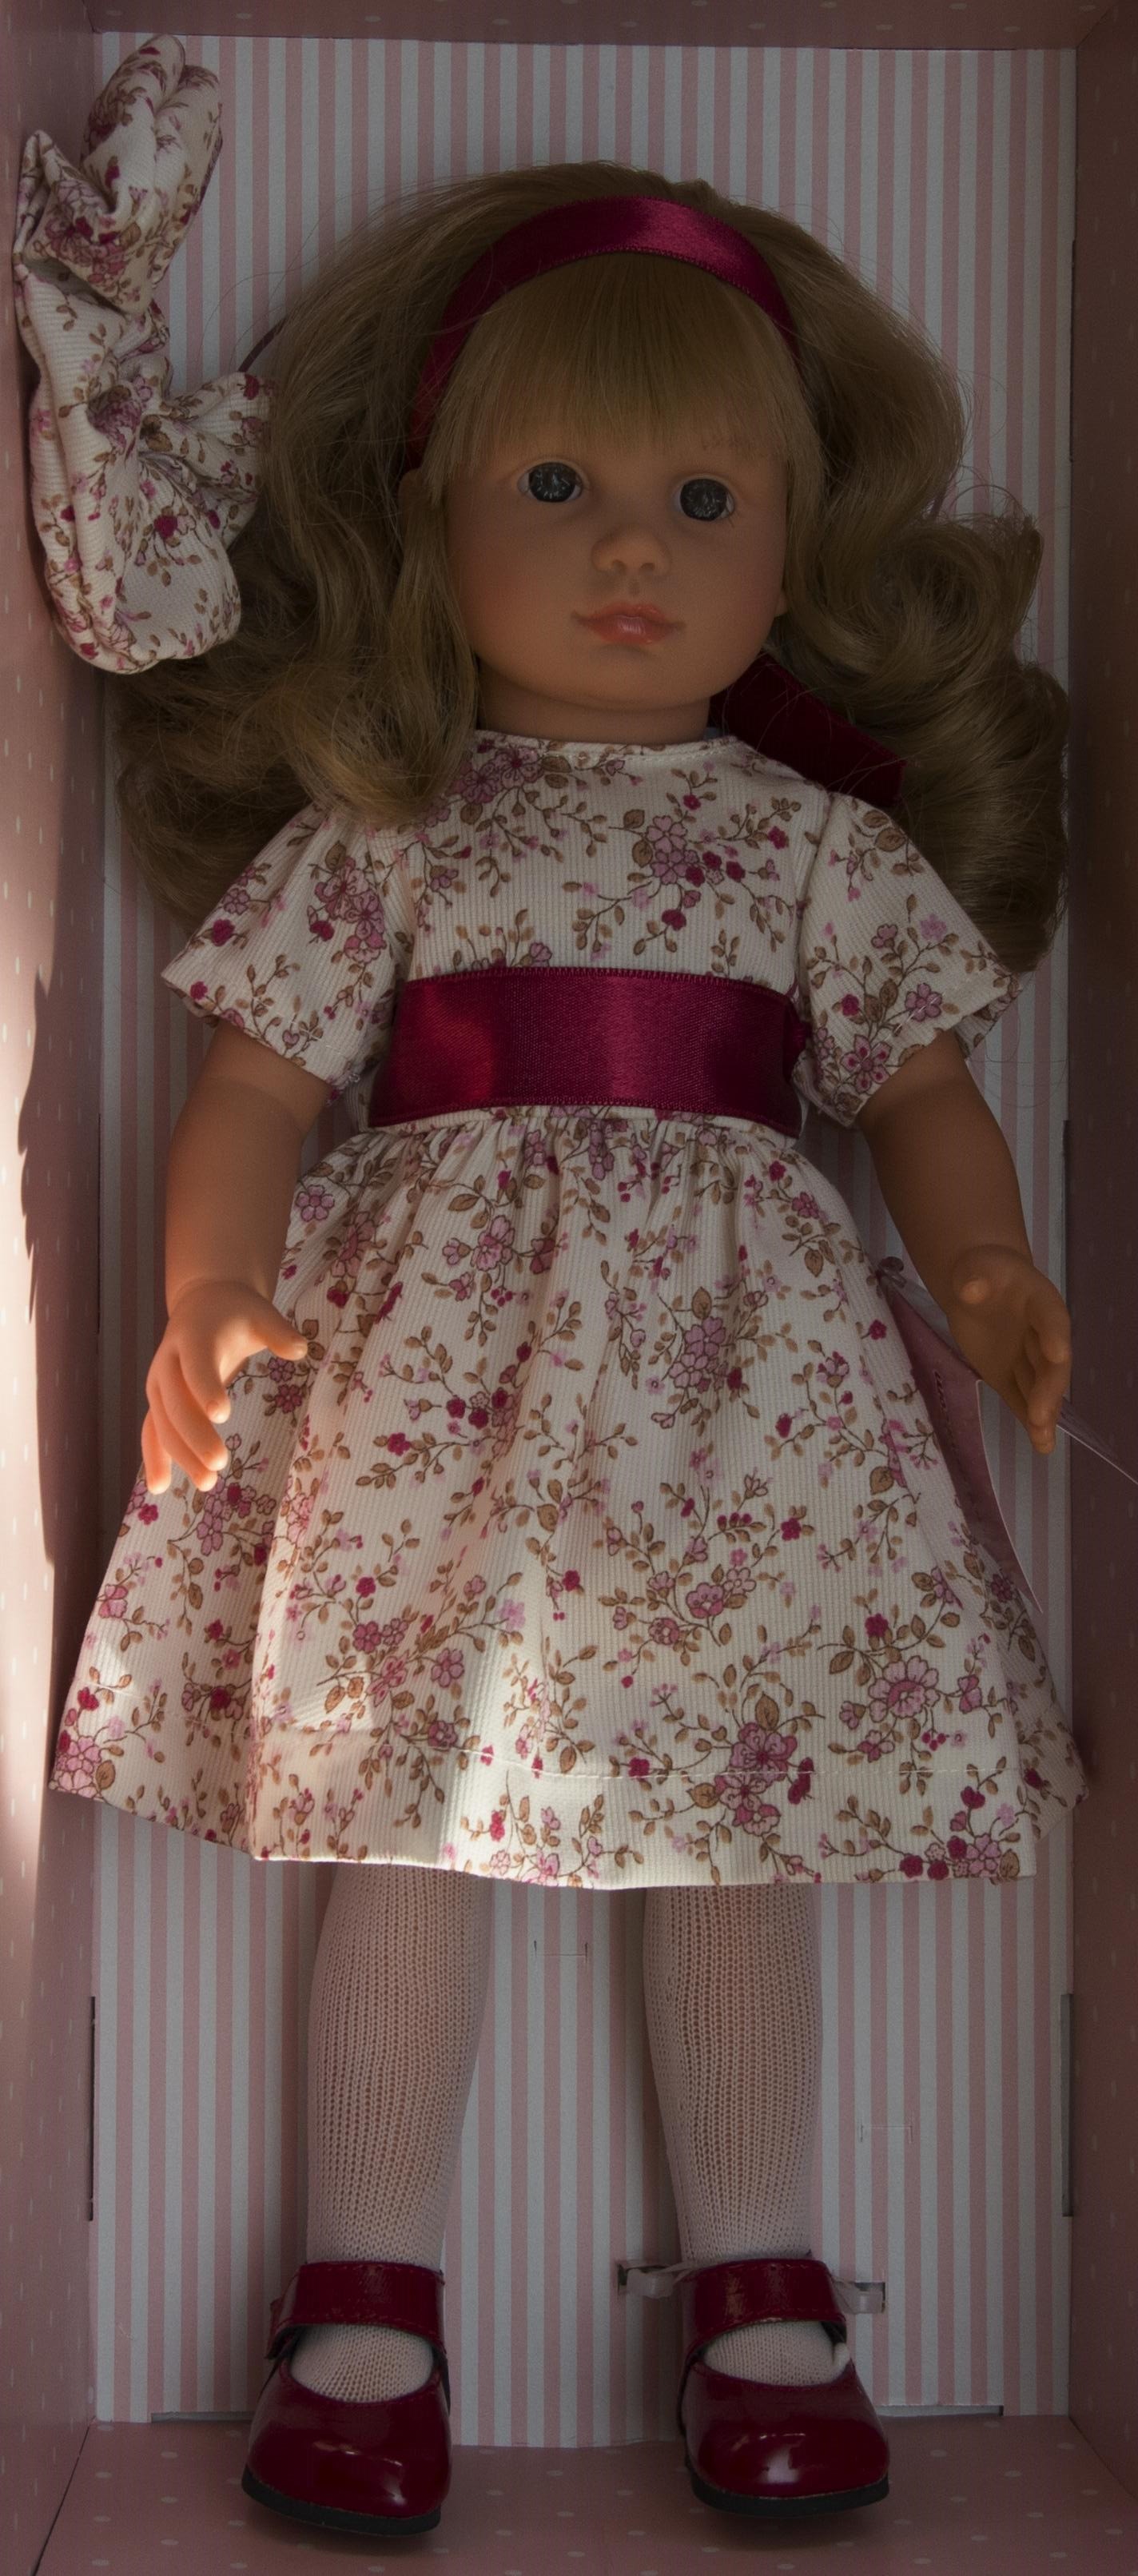 Realistická panenka NELLY - květované šaty - od firmy ASIVIL ze Španělska